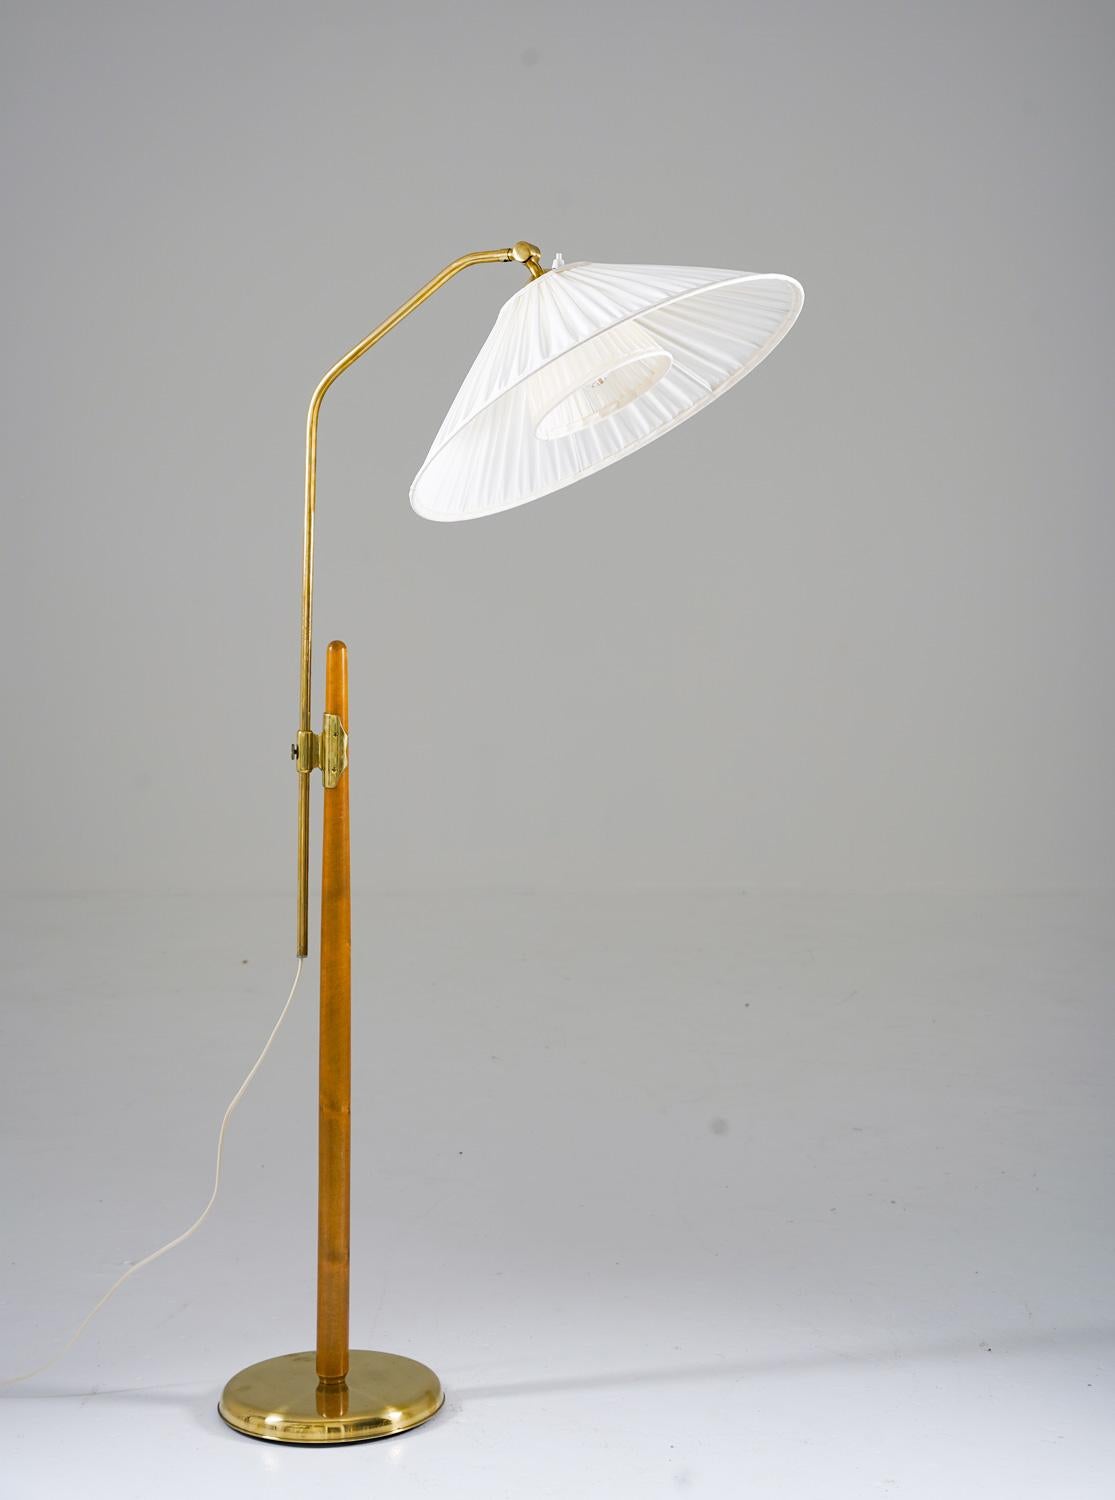 Joli lampadaire fabriqué par Liberty, années 1940. 
La lampe se compose d'un poteau en bois, supportant une tige en laiton réglable en hauteur. 

La hauteur maximale est de 160 cm (55